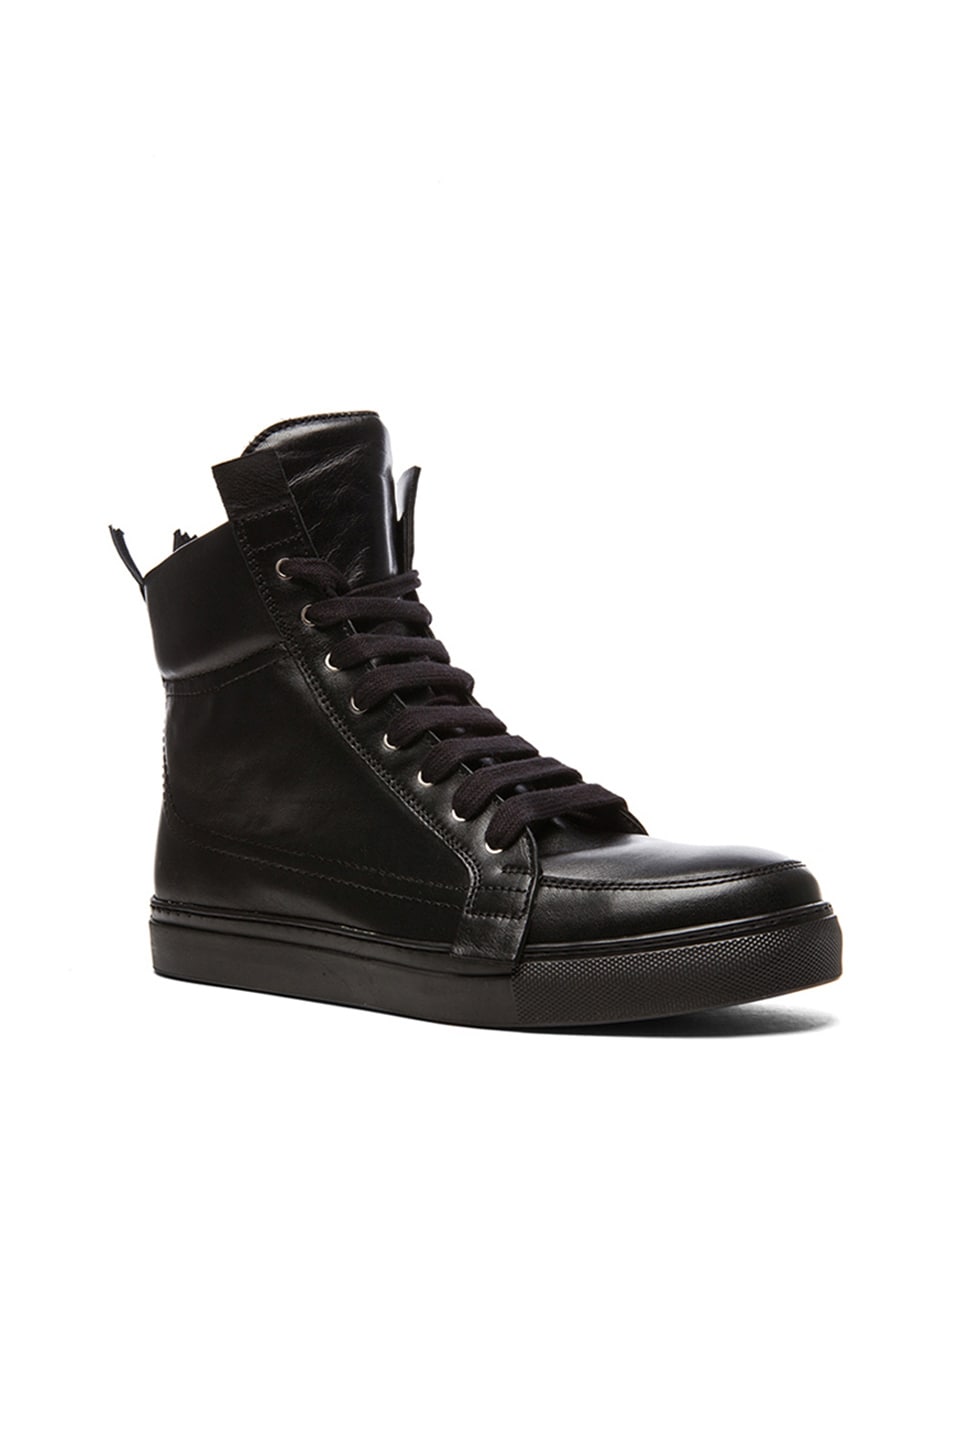 Image 1 of Kris Van Assche Calfskin Leather High Top Sneakers in Black